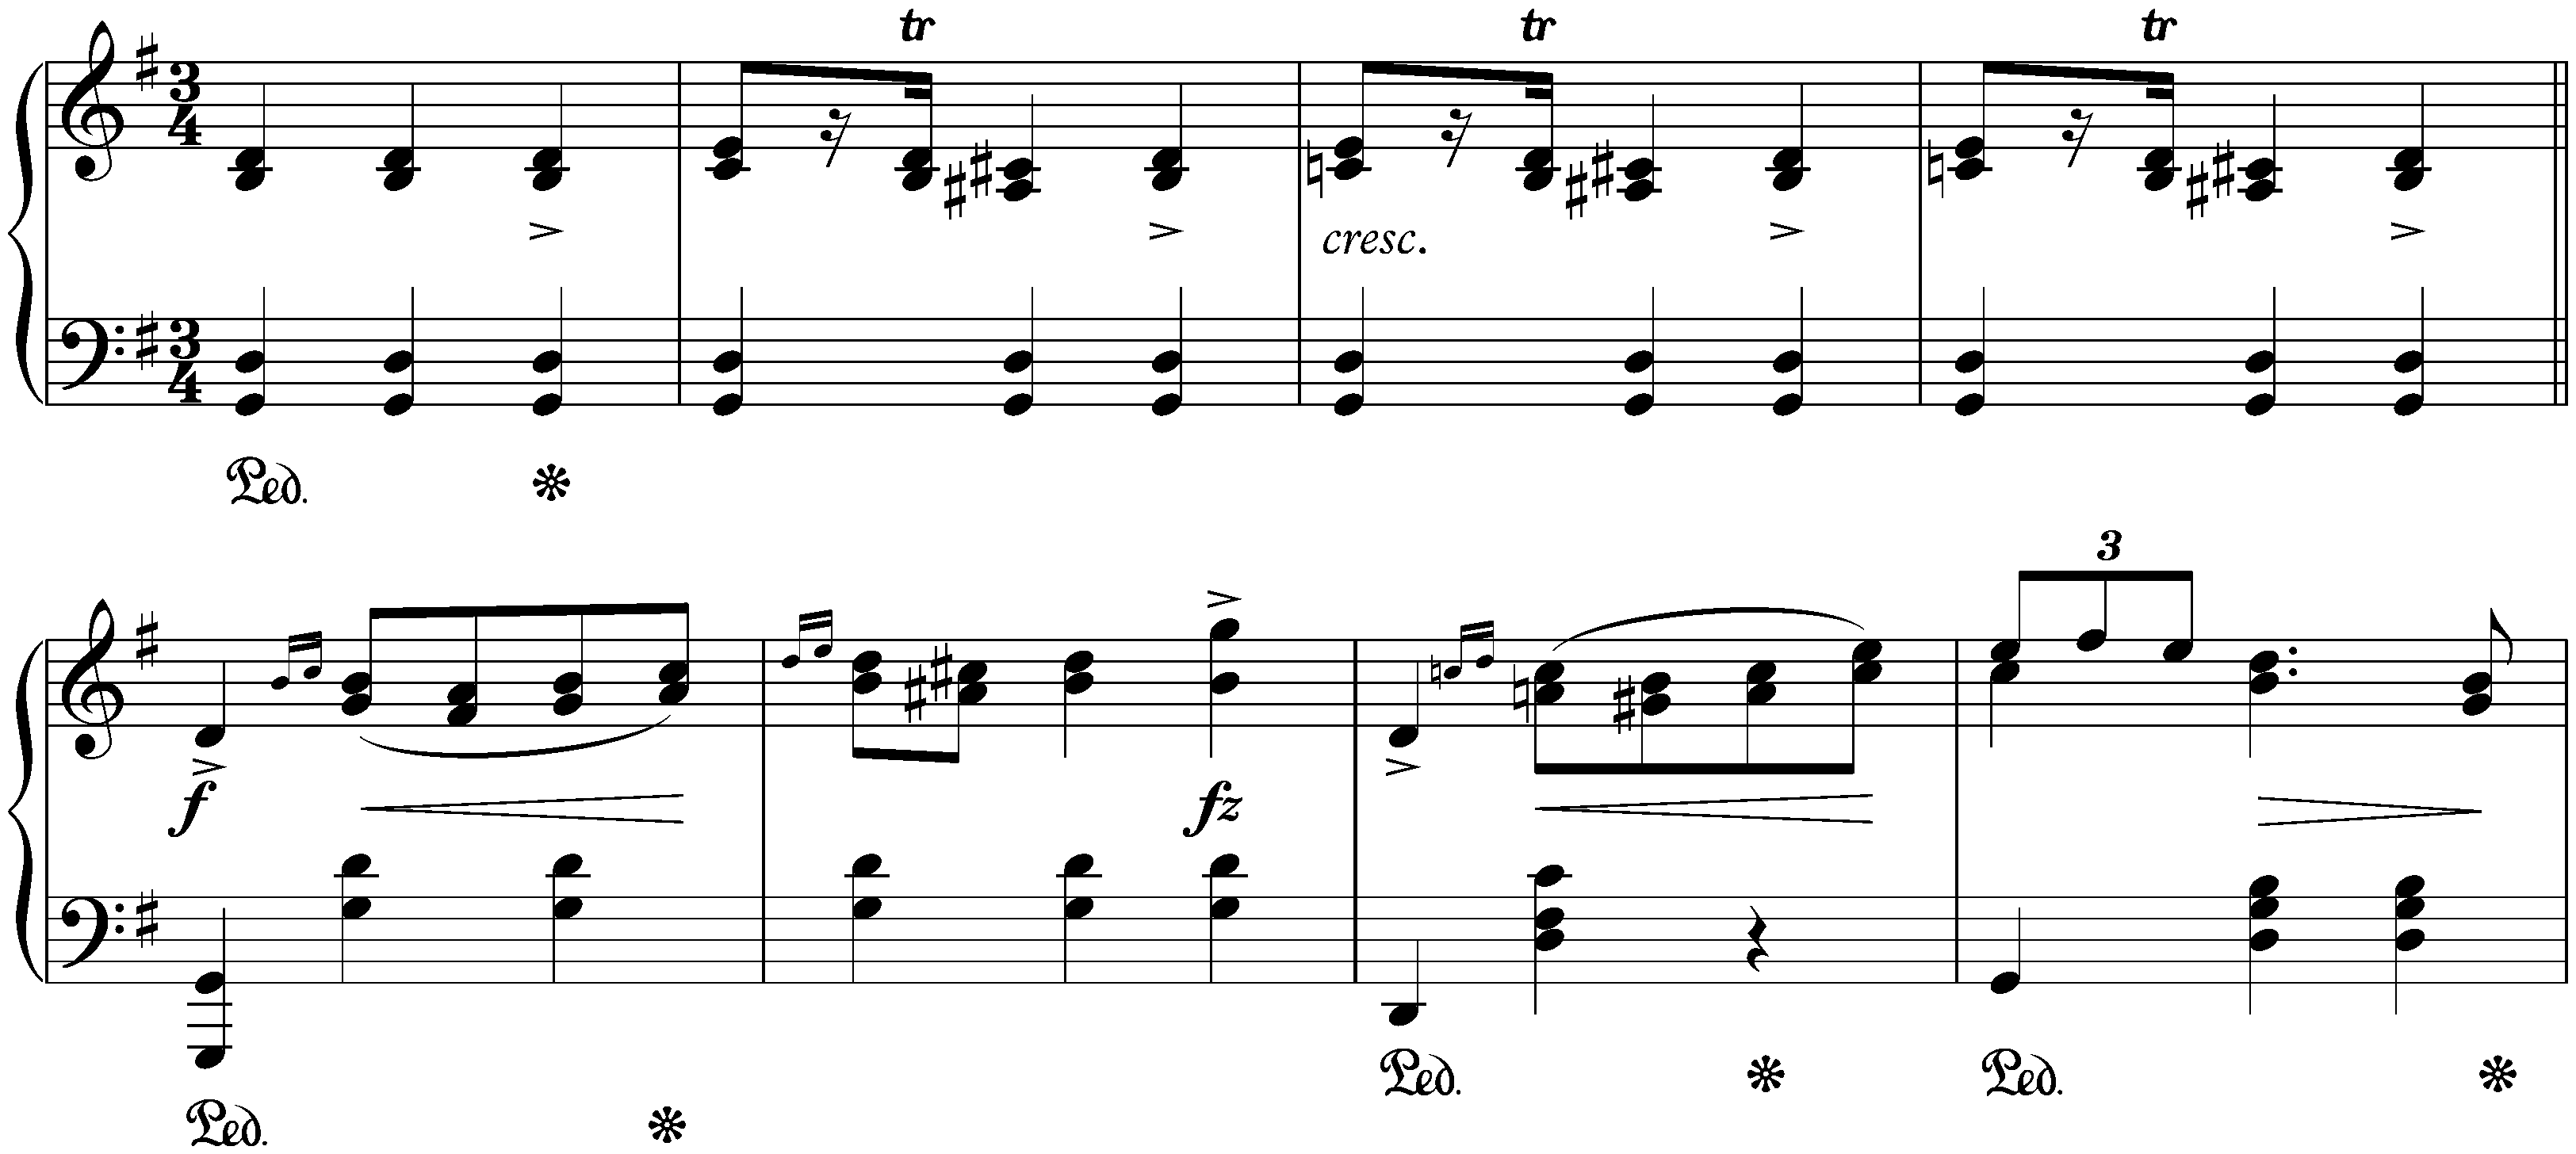 Four Mazurkas, op. 67; 1. G major